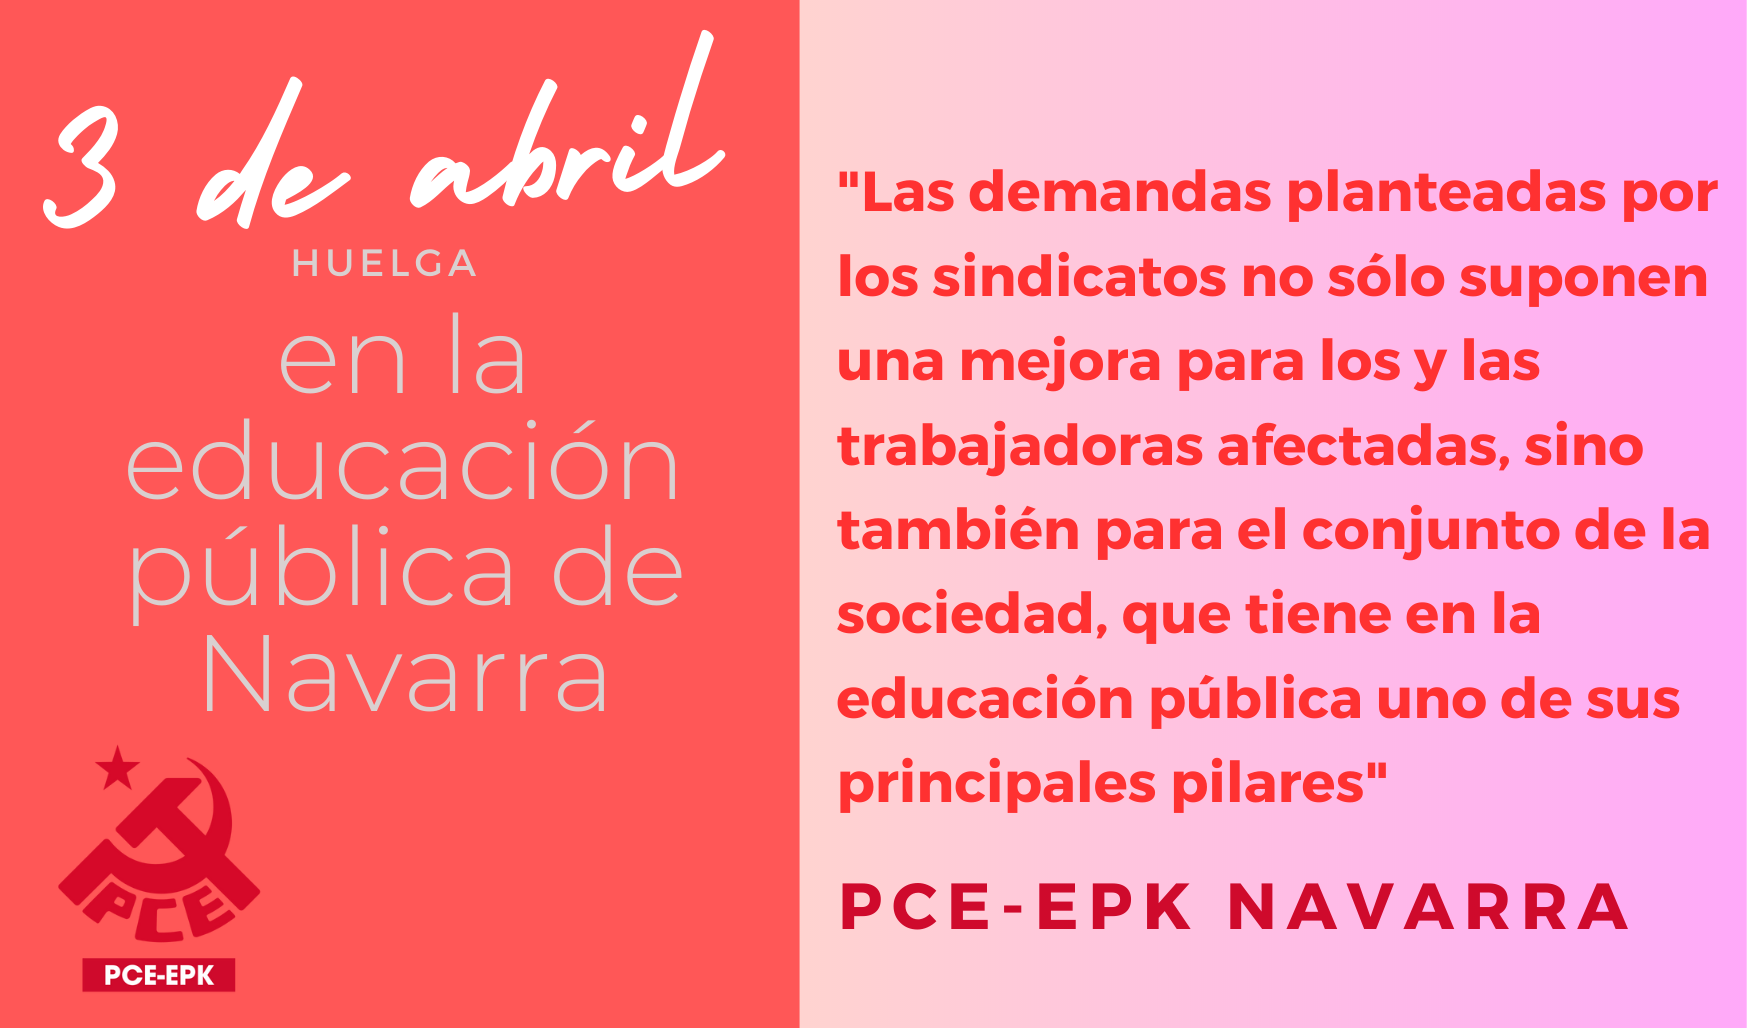 El PCE-EPK apoya la huelga del 3 de abril en defensa de la educación pública e insta al Gobierno de Navarra a negociar las demandas de los sindicatos